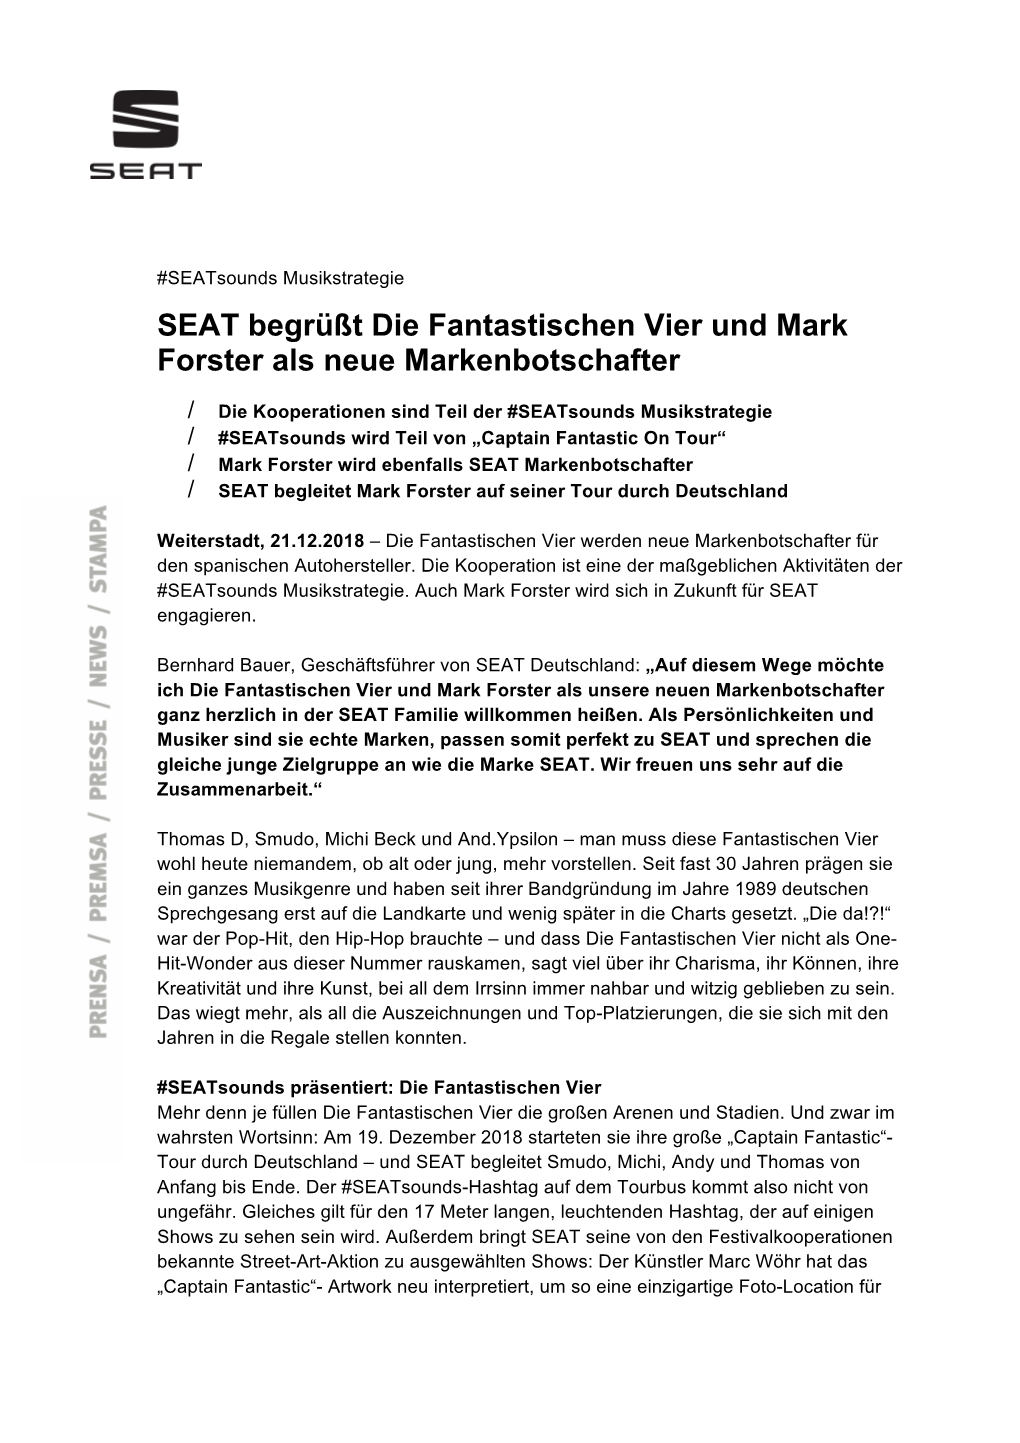 SEAT Begrüßt Die Fantastischen Vier Und Mark Forster Als Neue Markenbotschafter